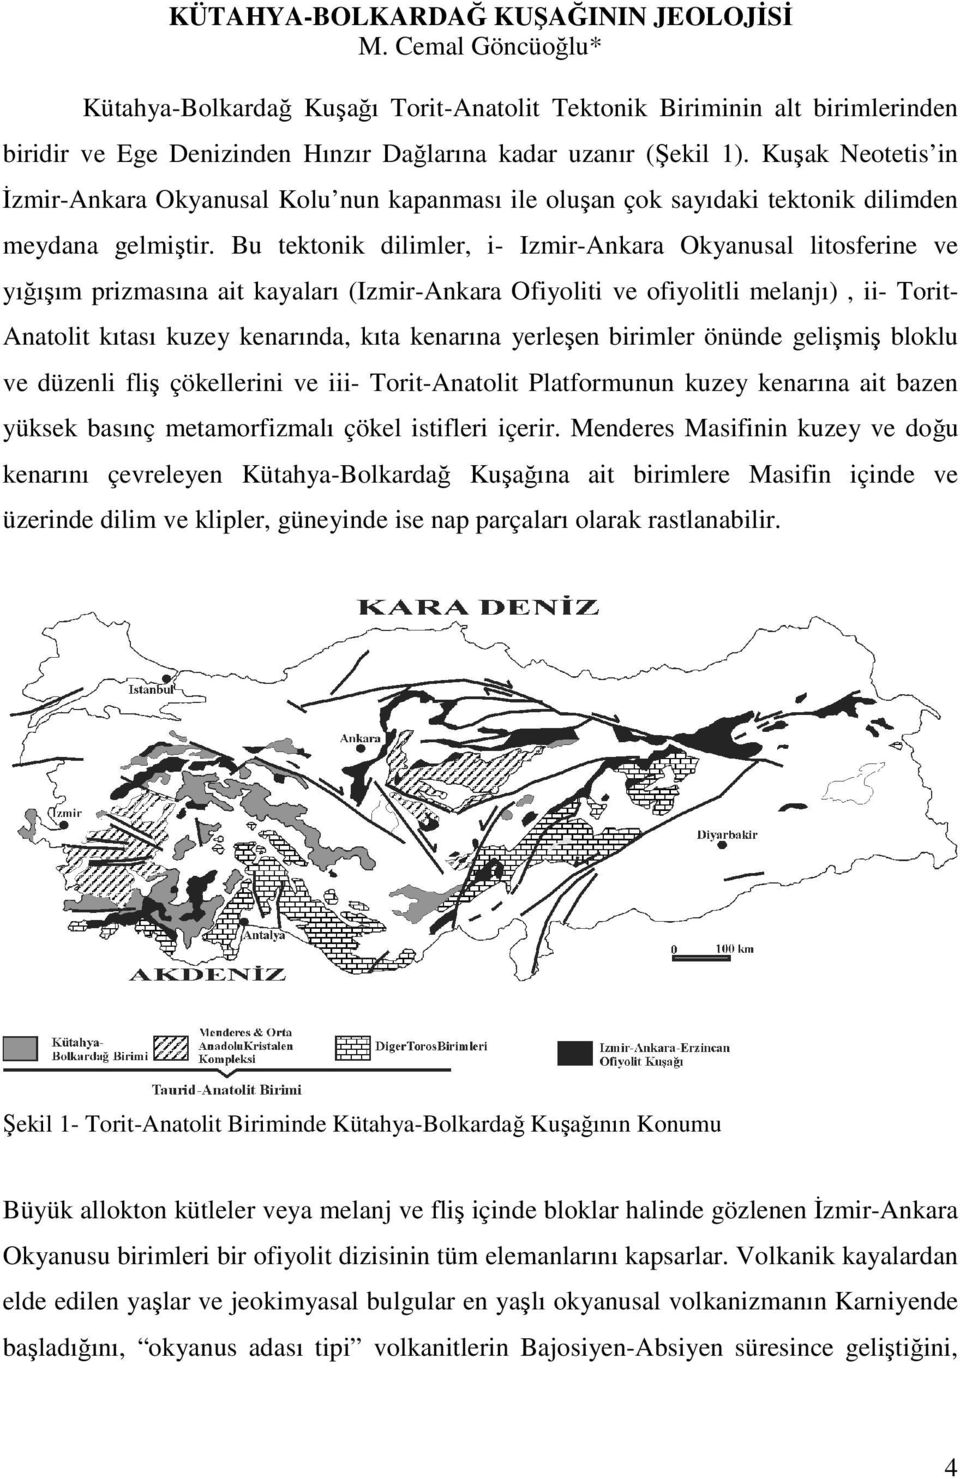 Kuşak Neotetis in Đzmir-Ankara Okyanusal Kolu nun kapanması ile oluşan çok sayıdaki tektonik dilimden meydana gelmiştir.